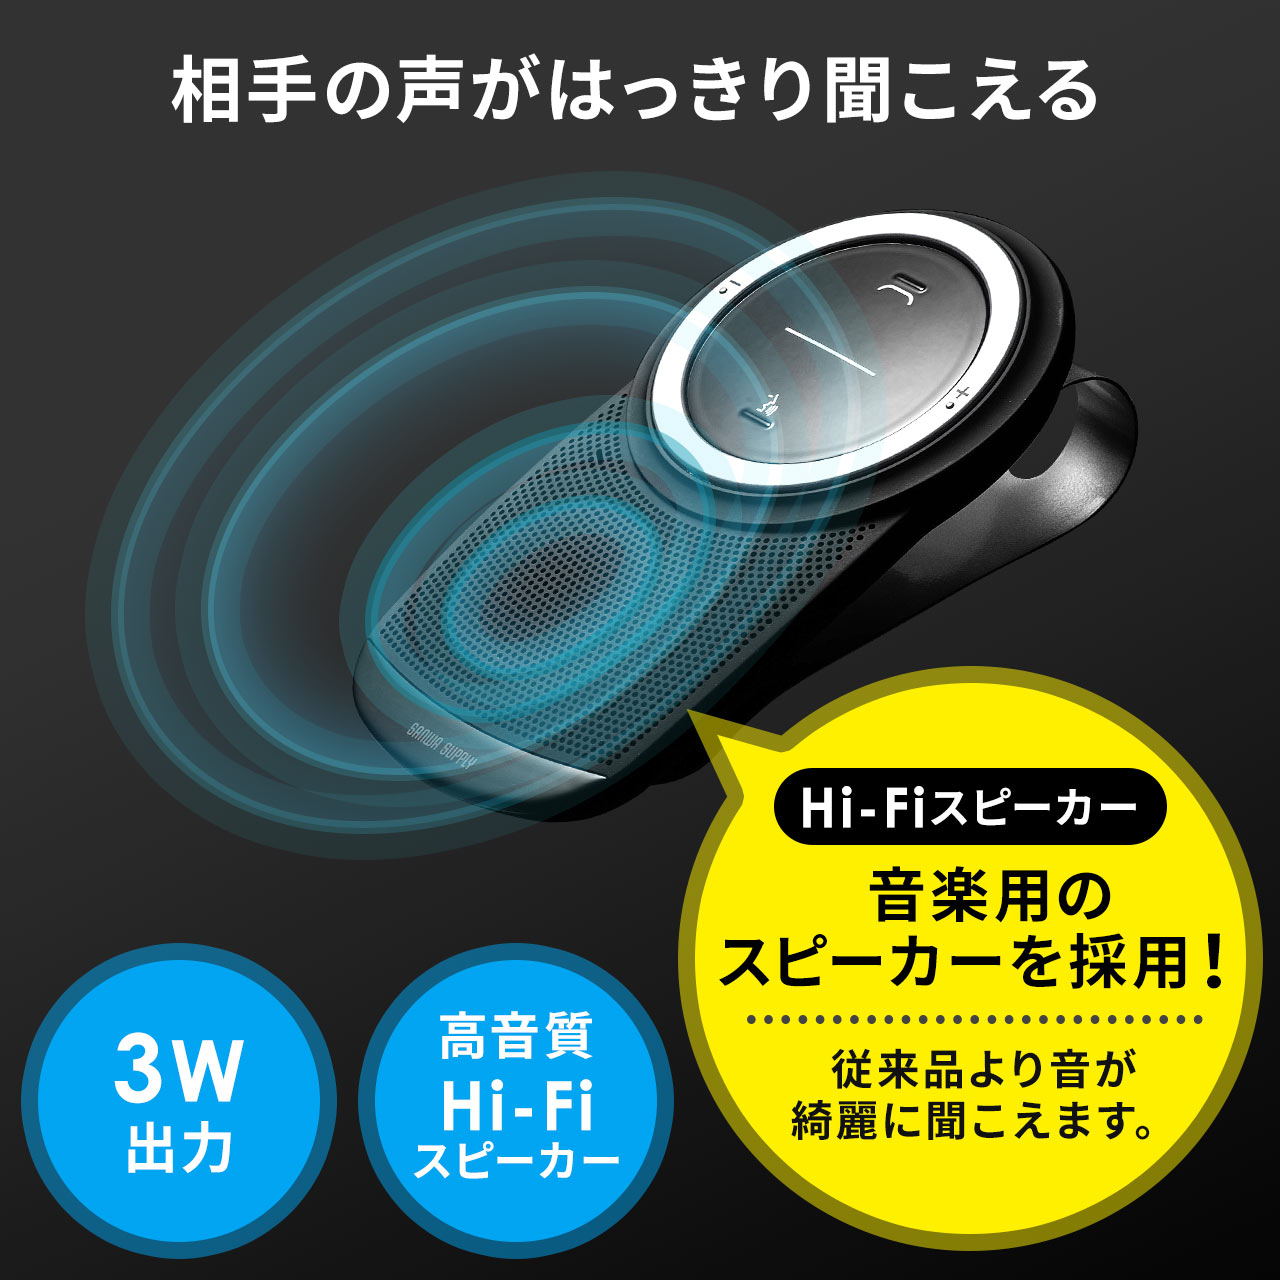 車載 Bluetoothスピーカーフォン ハンズフリー通話 音楽再生対応 Bluetooth4 1 3w出力 400 Btcar003の販売商品 通販ならサンワダイレクト